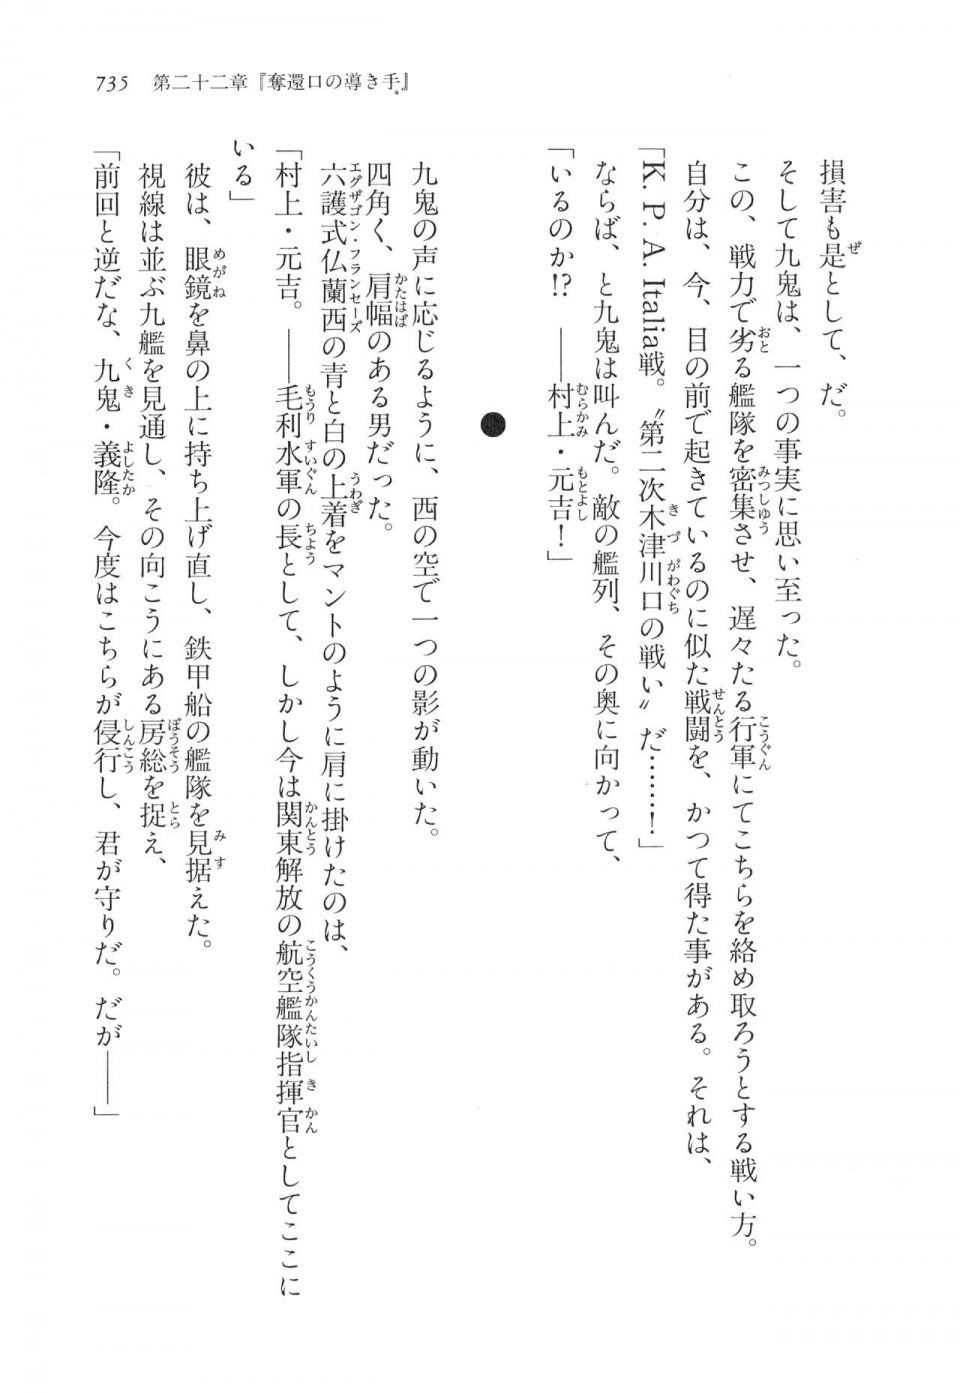 Kyoukai Senjou no Horizon LN Vol 16(7A) - Photo #735